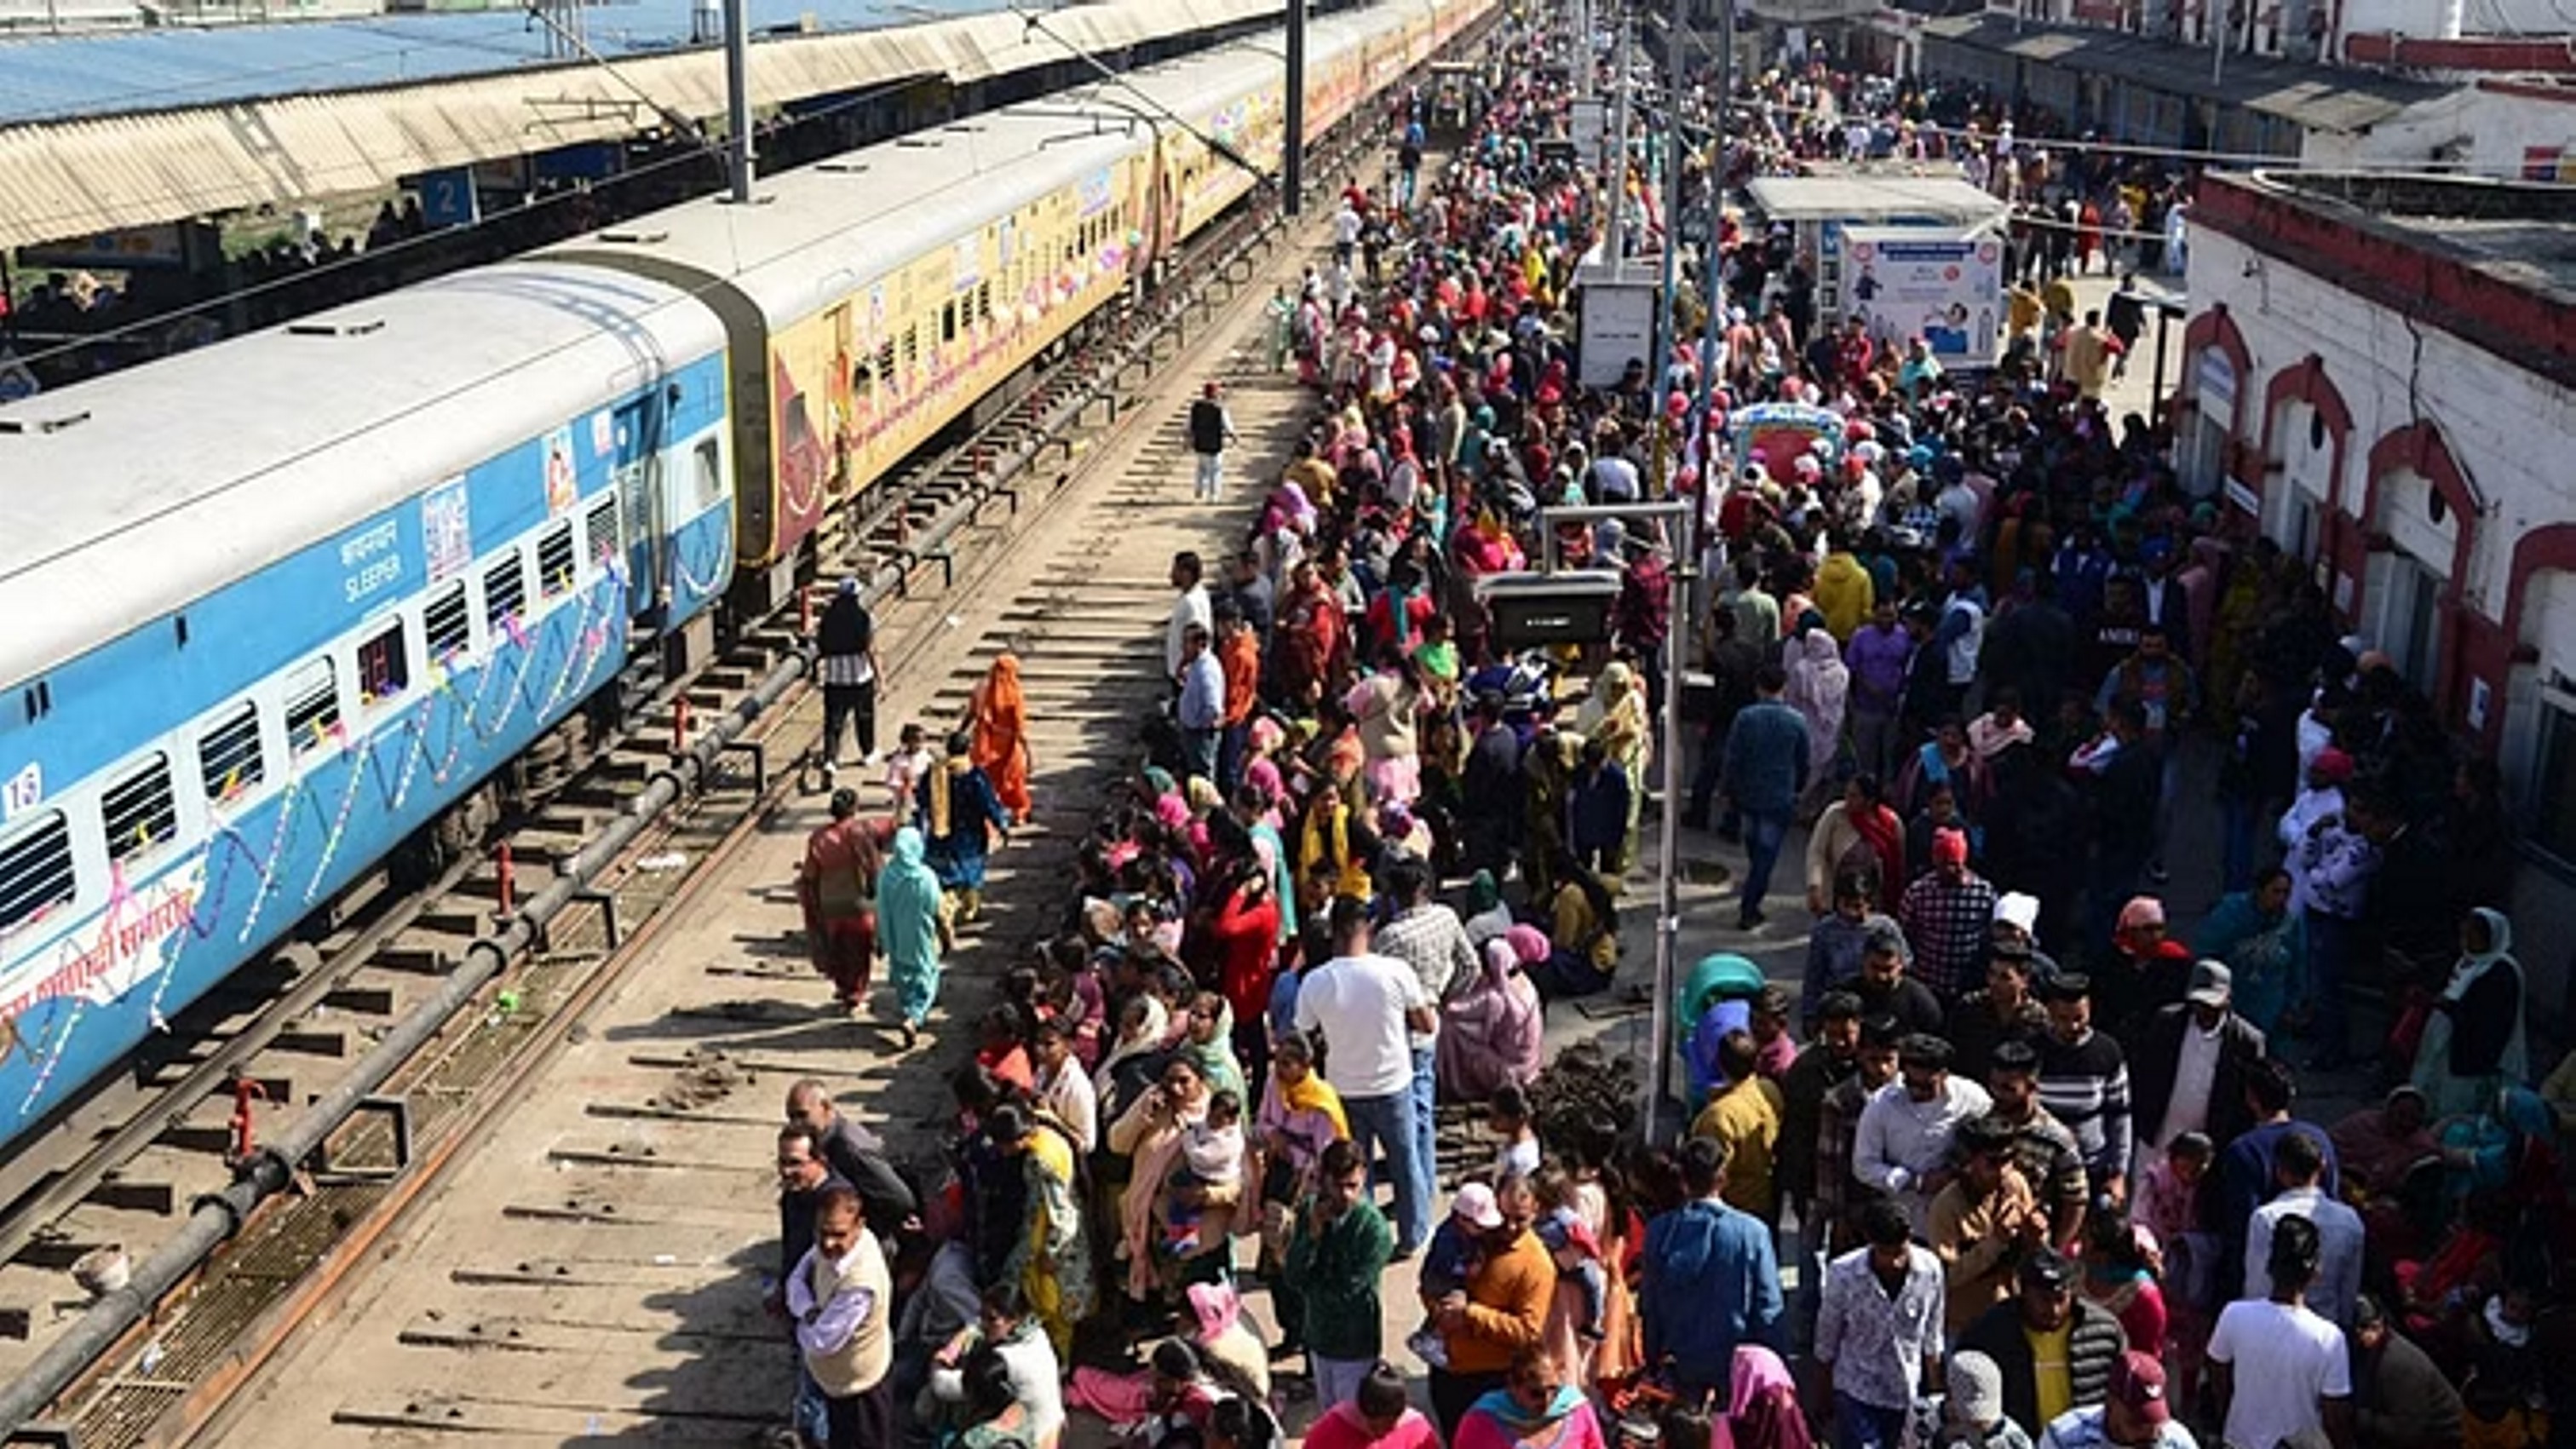 वरिष्ठ नागरिकों की रियायत समाप्त कर रेलवे ने चार वर्षों में कमाए 5,800 करोड़